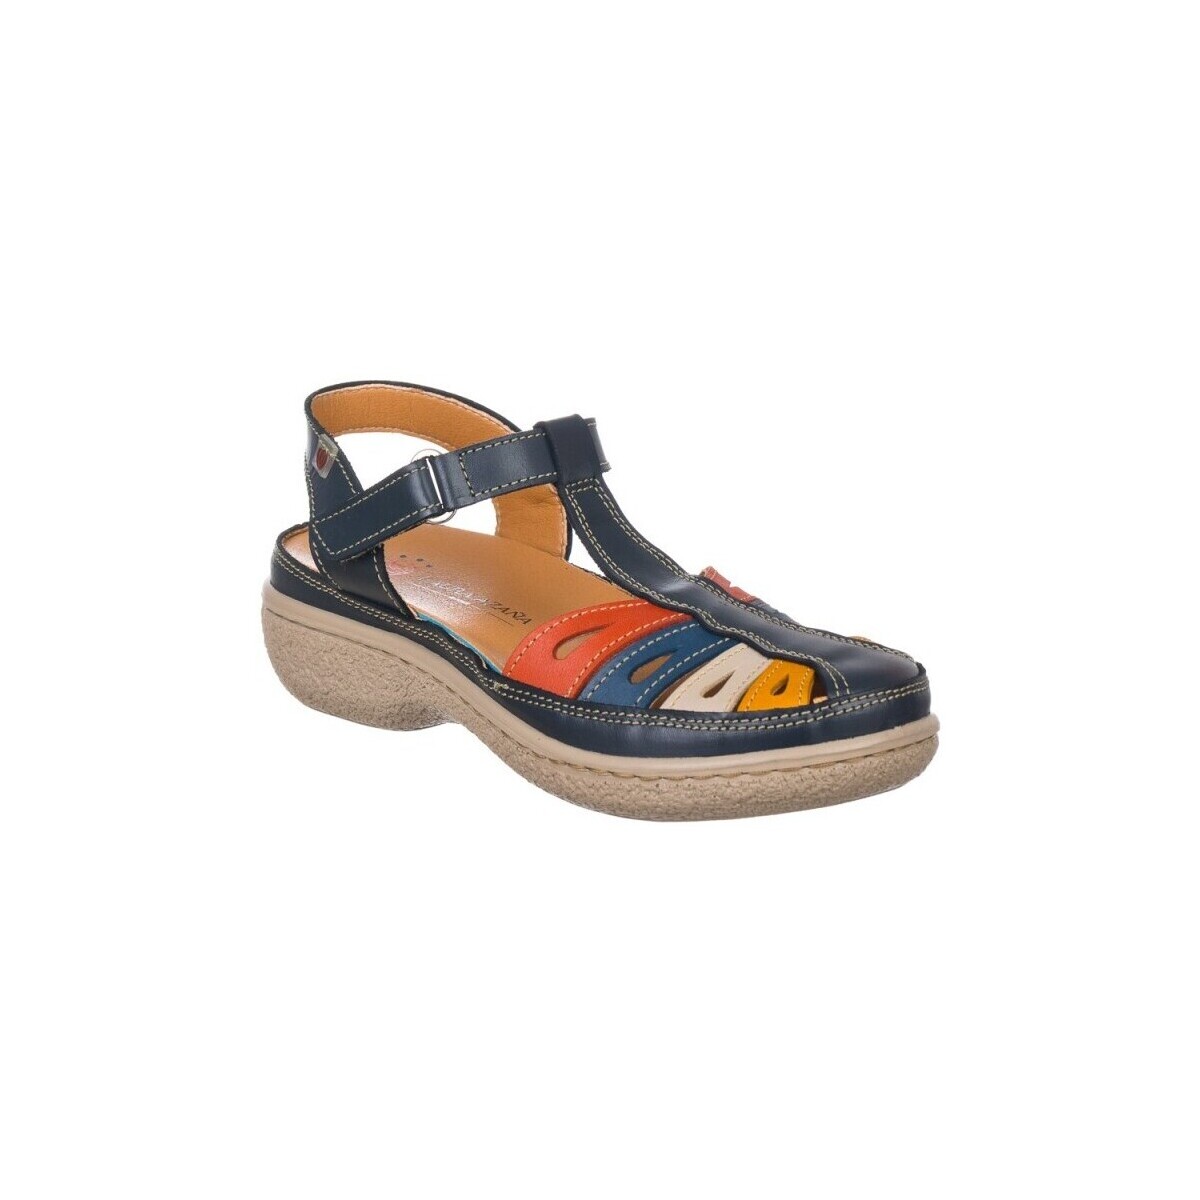 Schuhe Damen Sandalen / Sandaletten Laura Azaña SCHUHE  11978 Blau